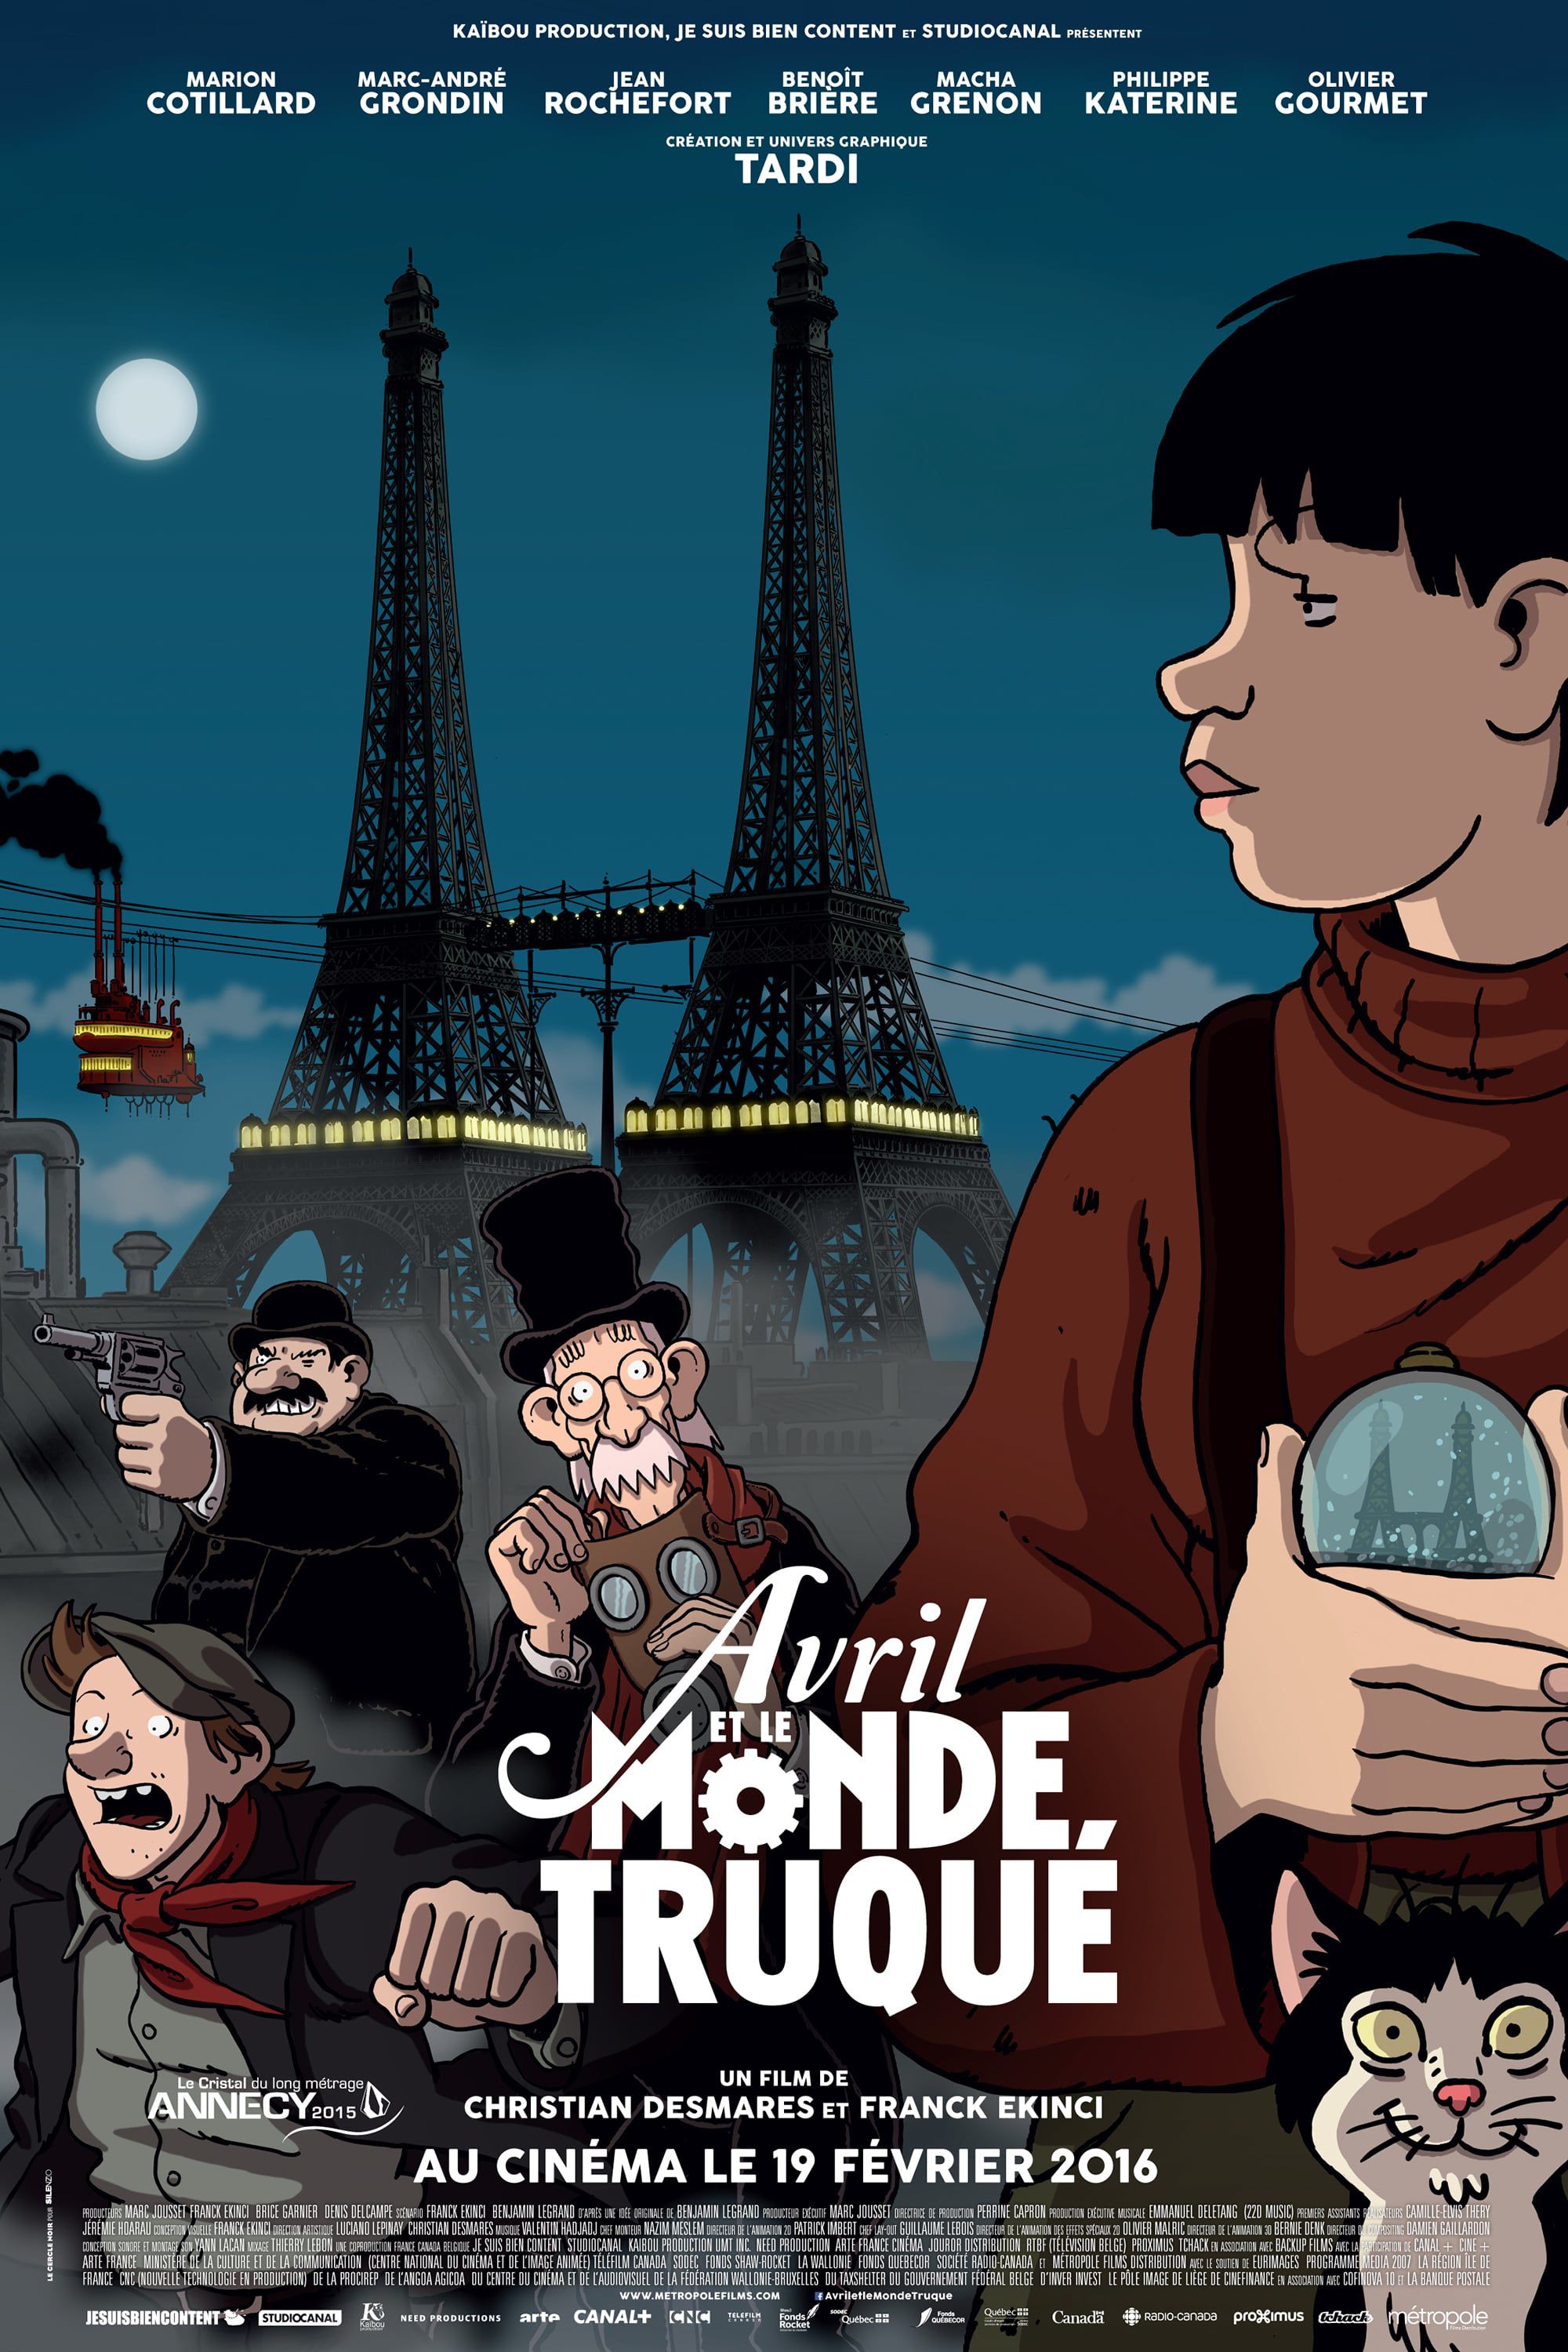 Avril et le Monde truqué - Long-métrage d'animation (2015) streaming VF gratuit complet